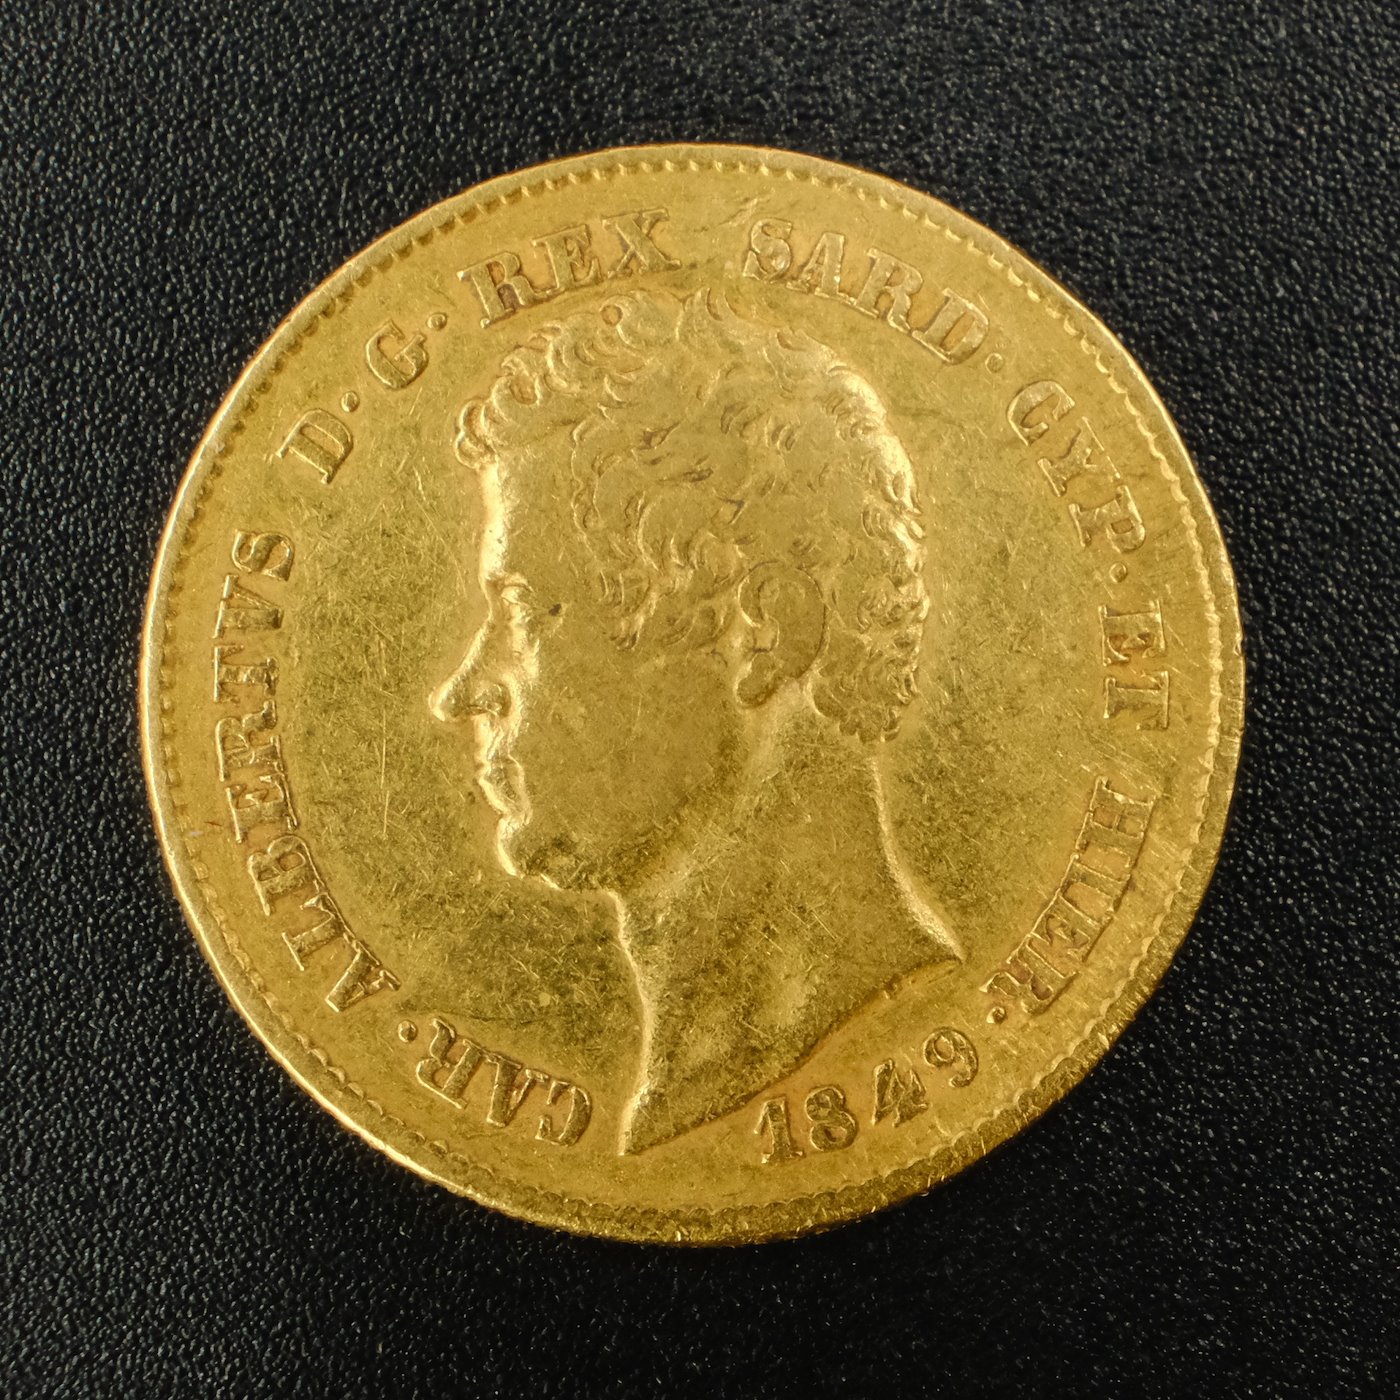 Mince - Zlatá 20 Lira Italie 1849 P král Karel Albert, zlato 900/1000, hmotnost hrubá 6,45g